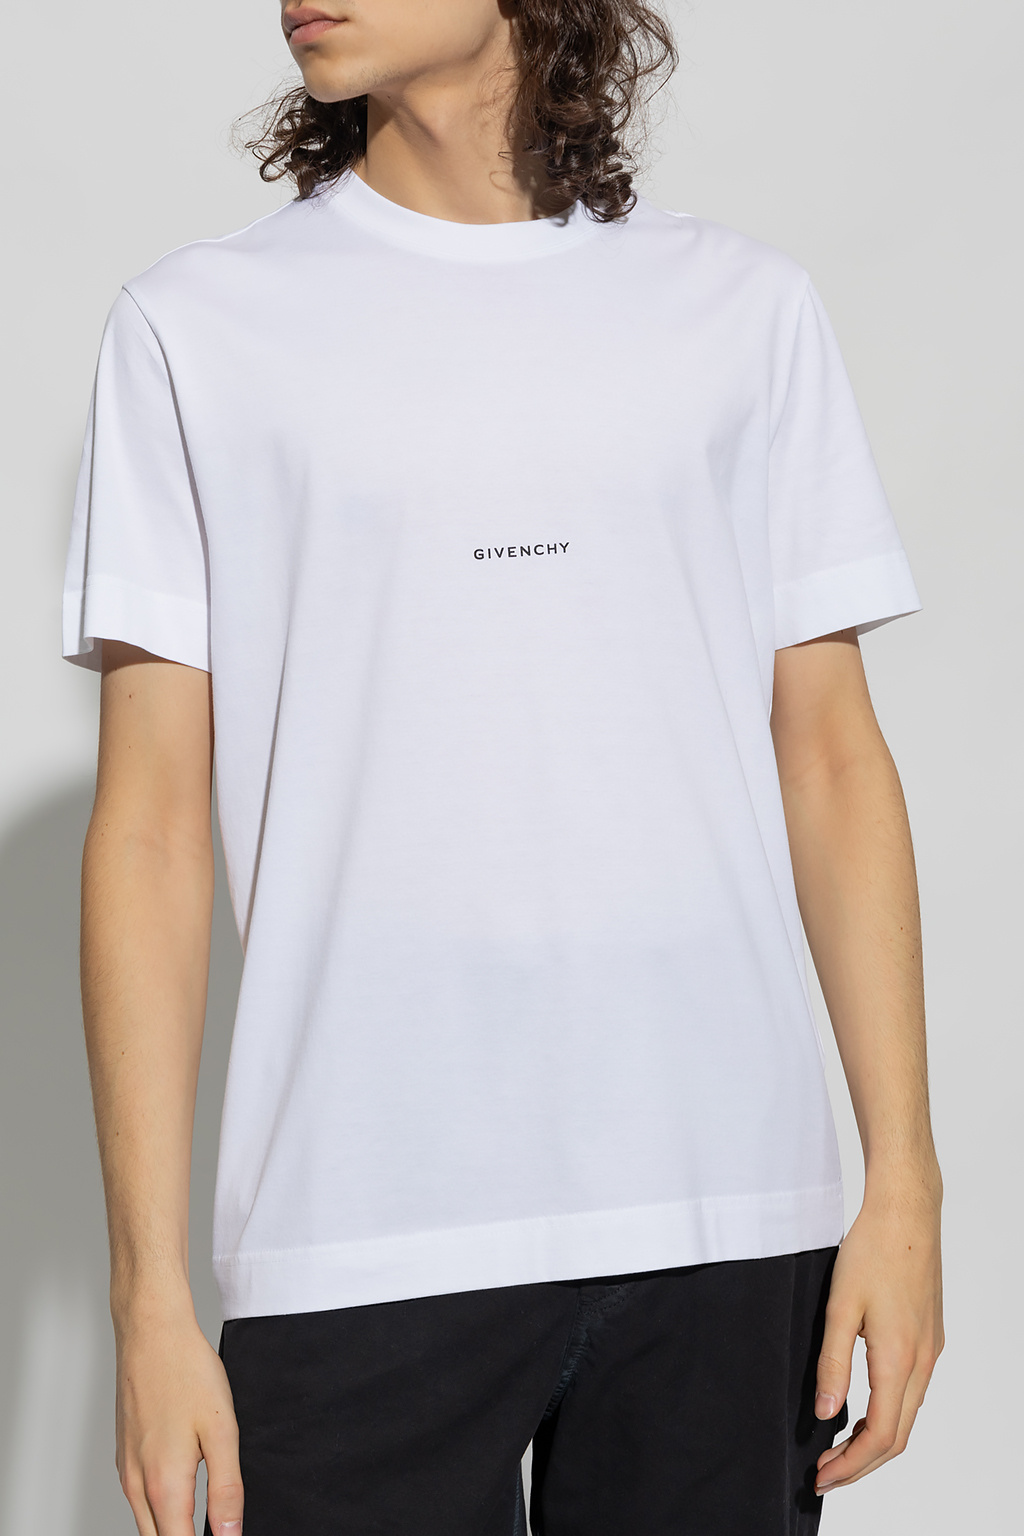 Givenchy Givenchy logo-print sweatshirt